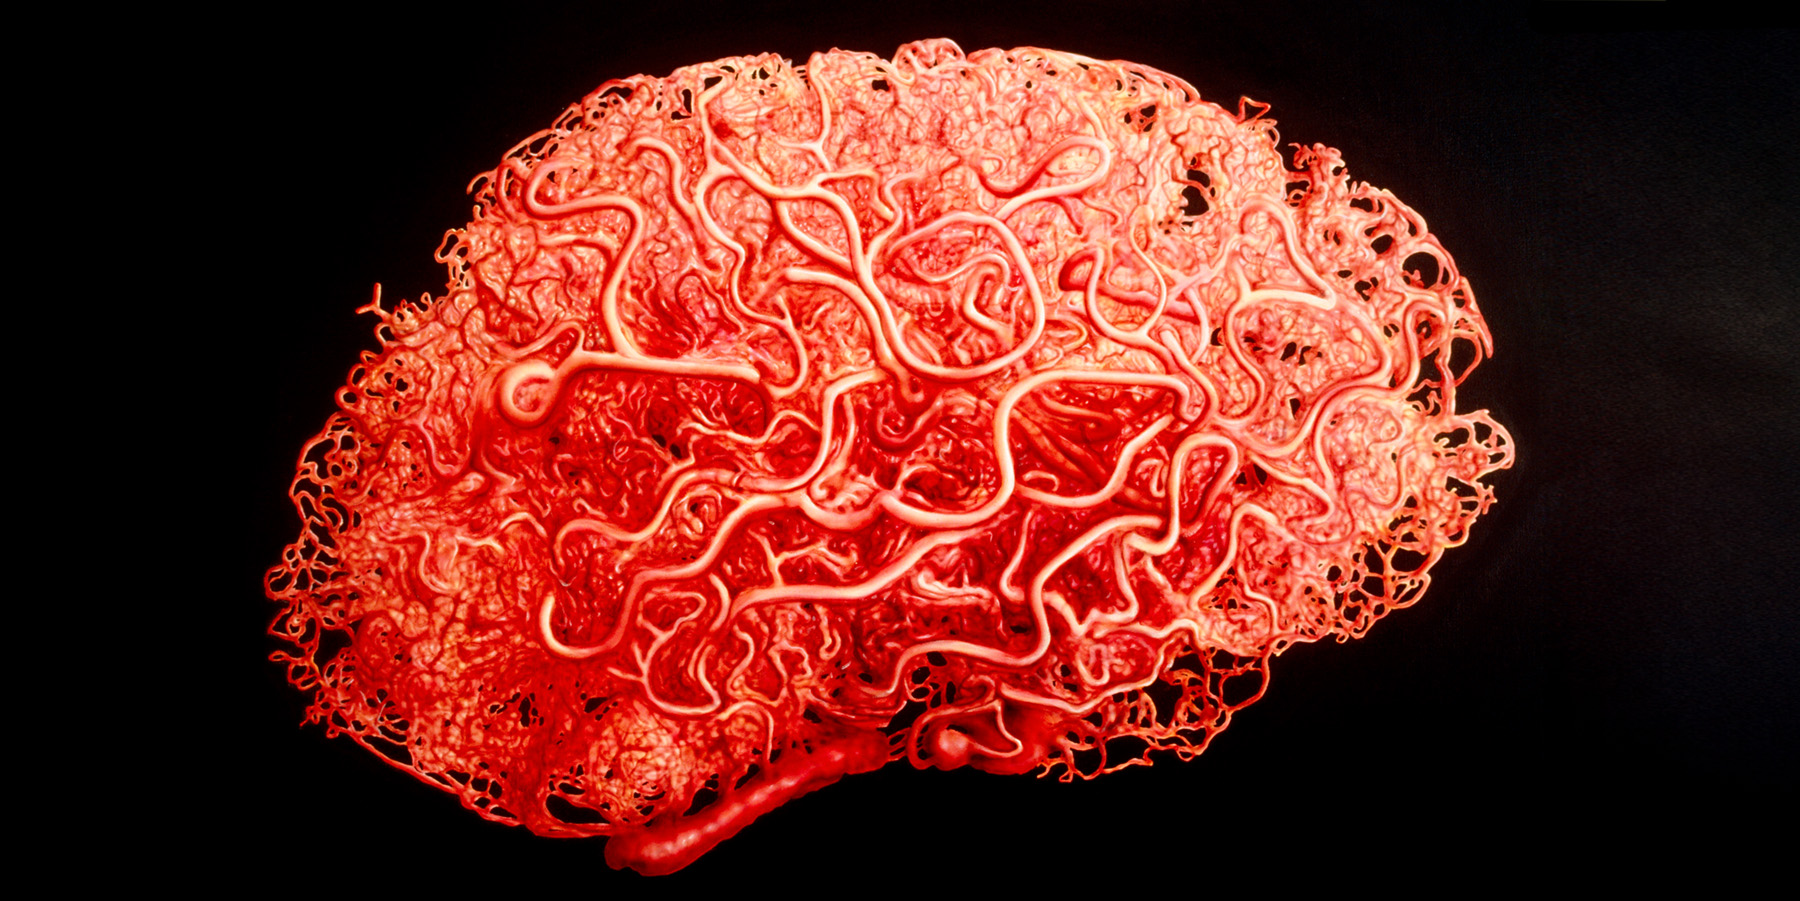 Gehirn simuliert aus Blutgefässen